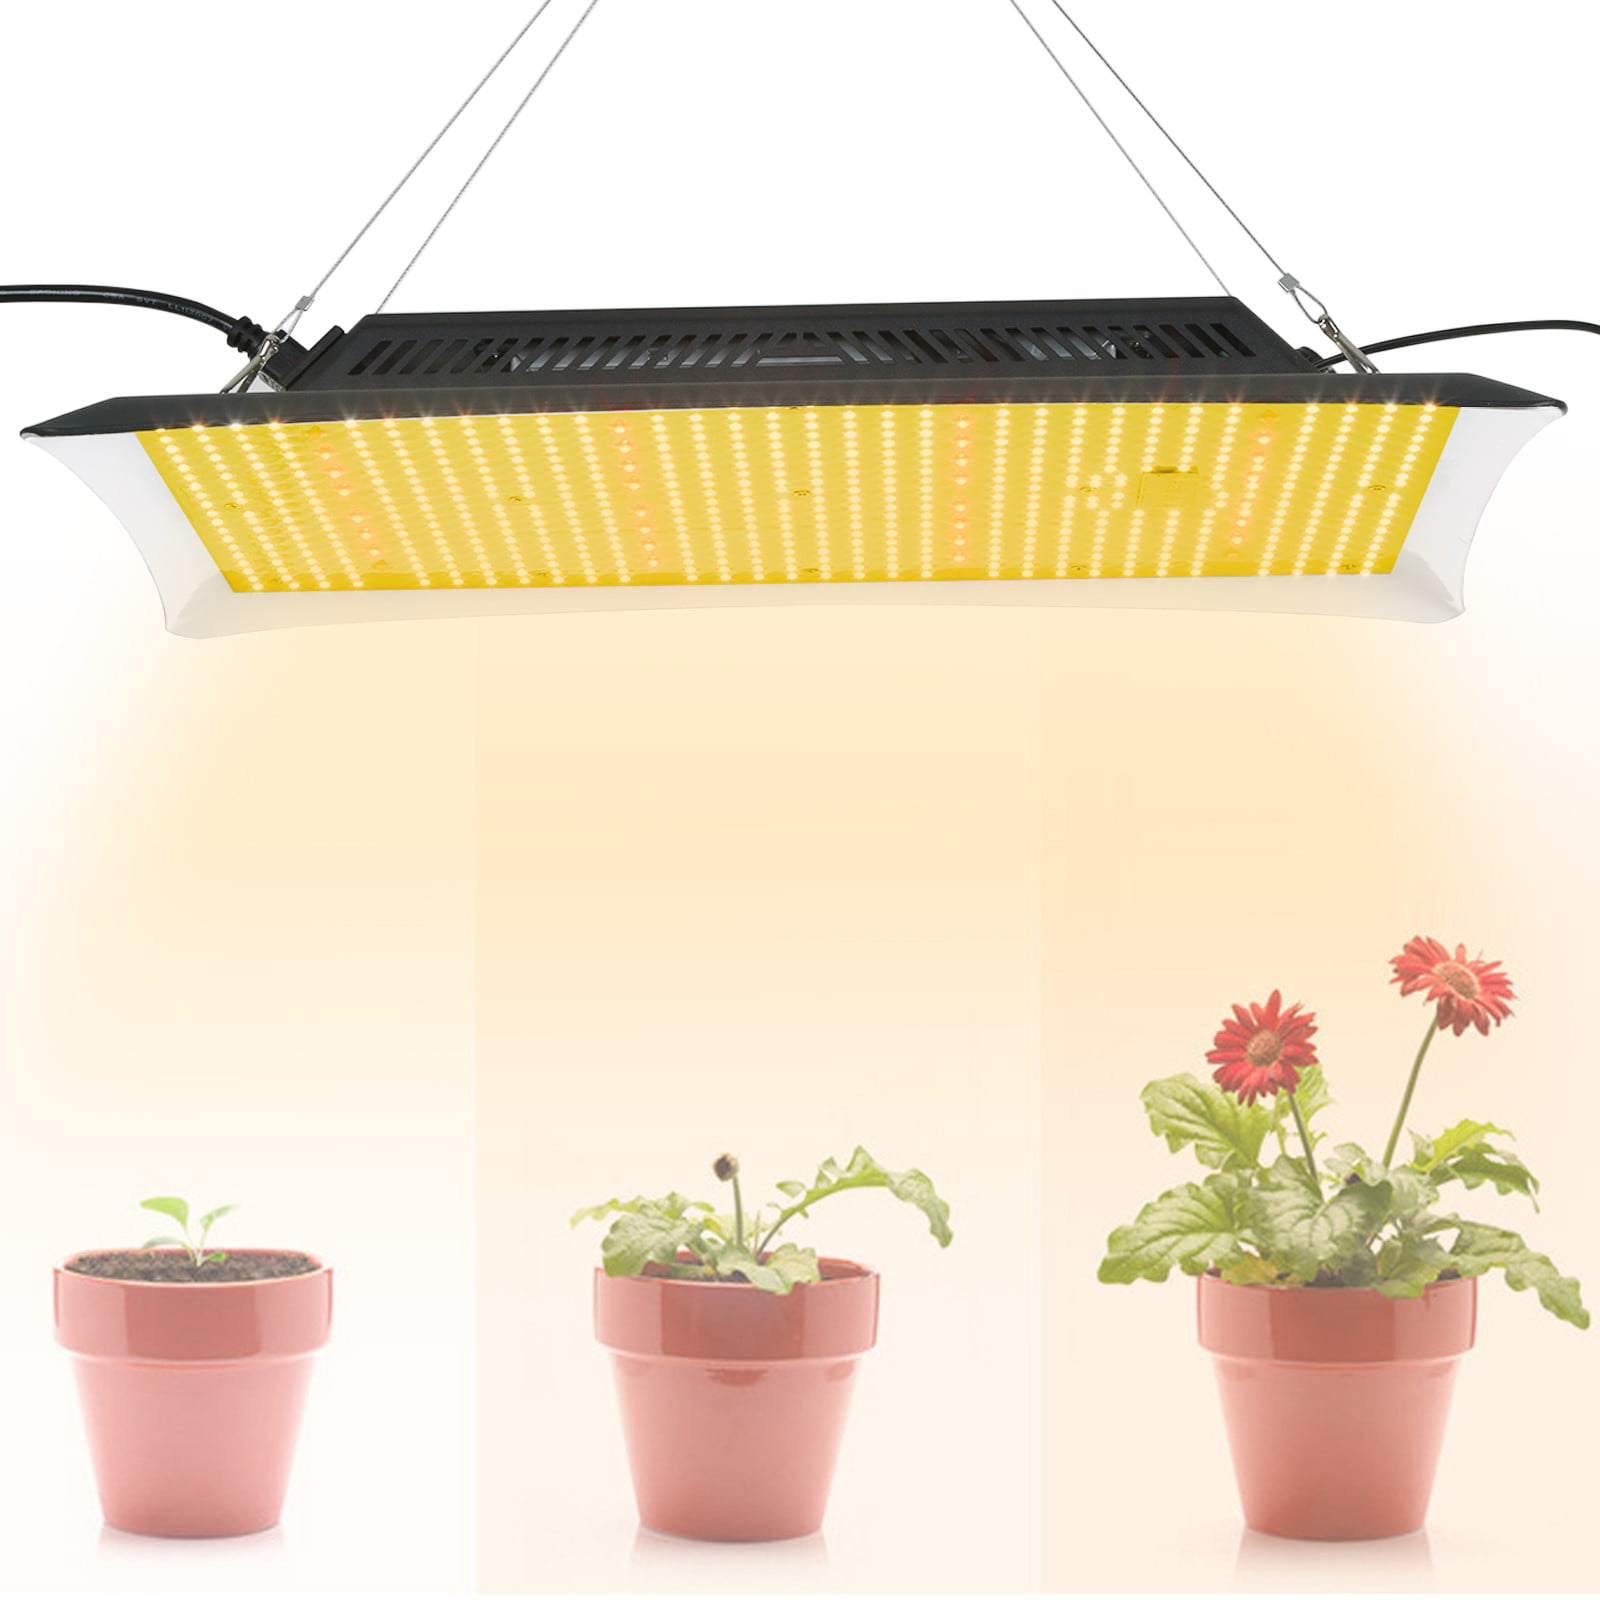 8000W LED Grow Light Lamp Full Spectrum for Indoor Plants Veg Flower Daisy Chain 